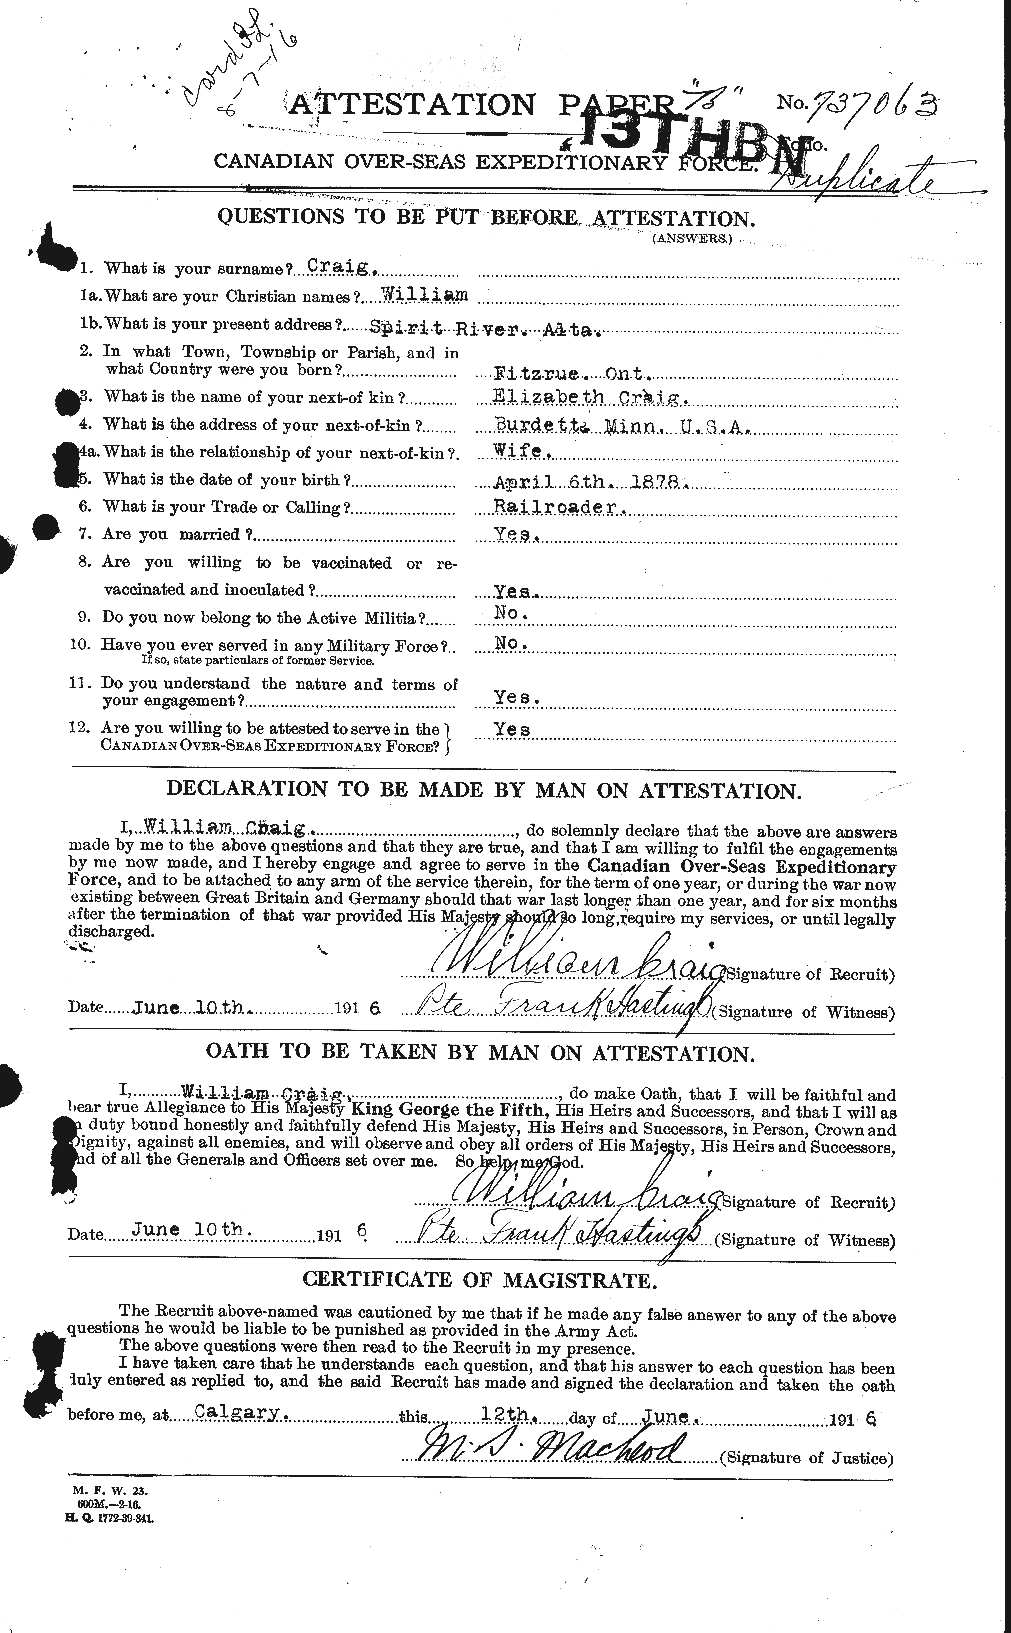 Dossiers du Personnel de la Première Guerre mondiale - CEC 060138a